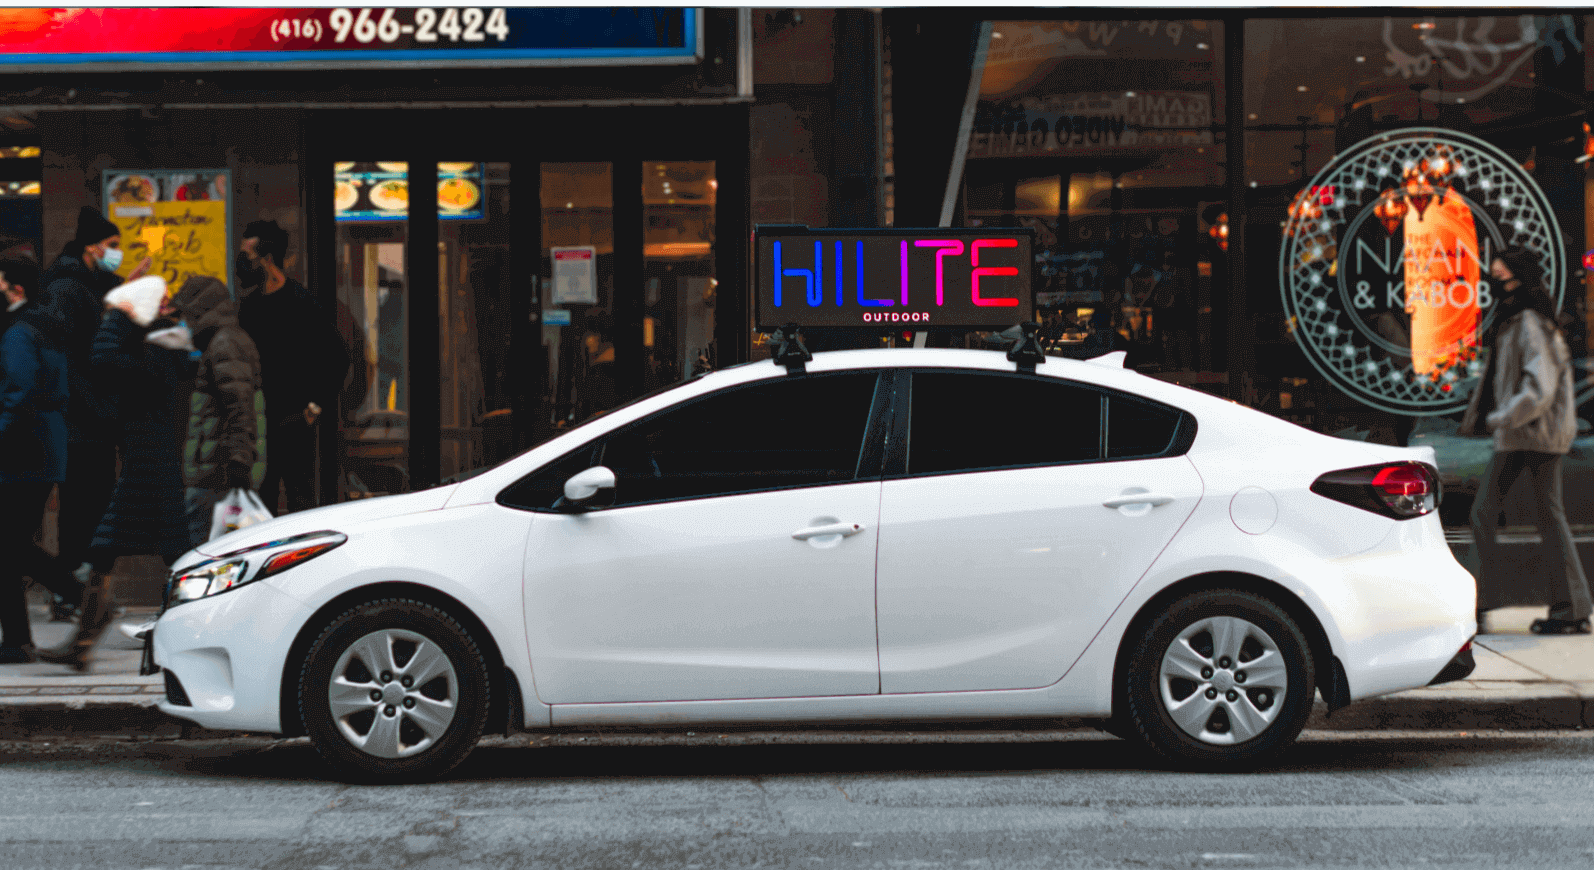 Hilite Outdoor Car Top DOOH Screen